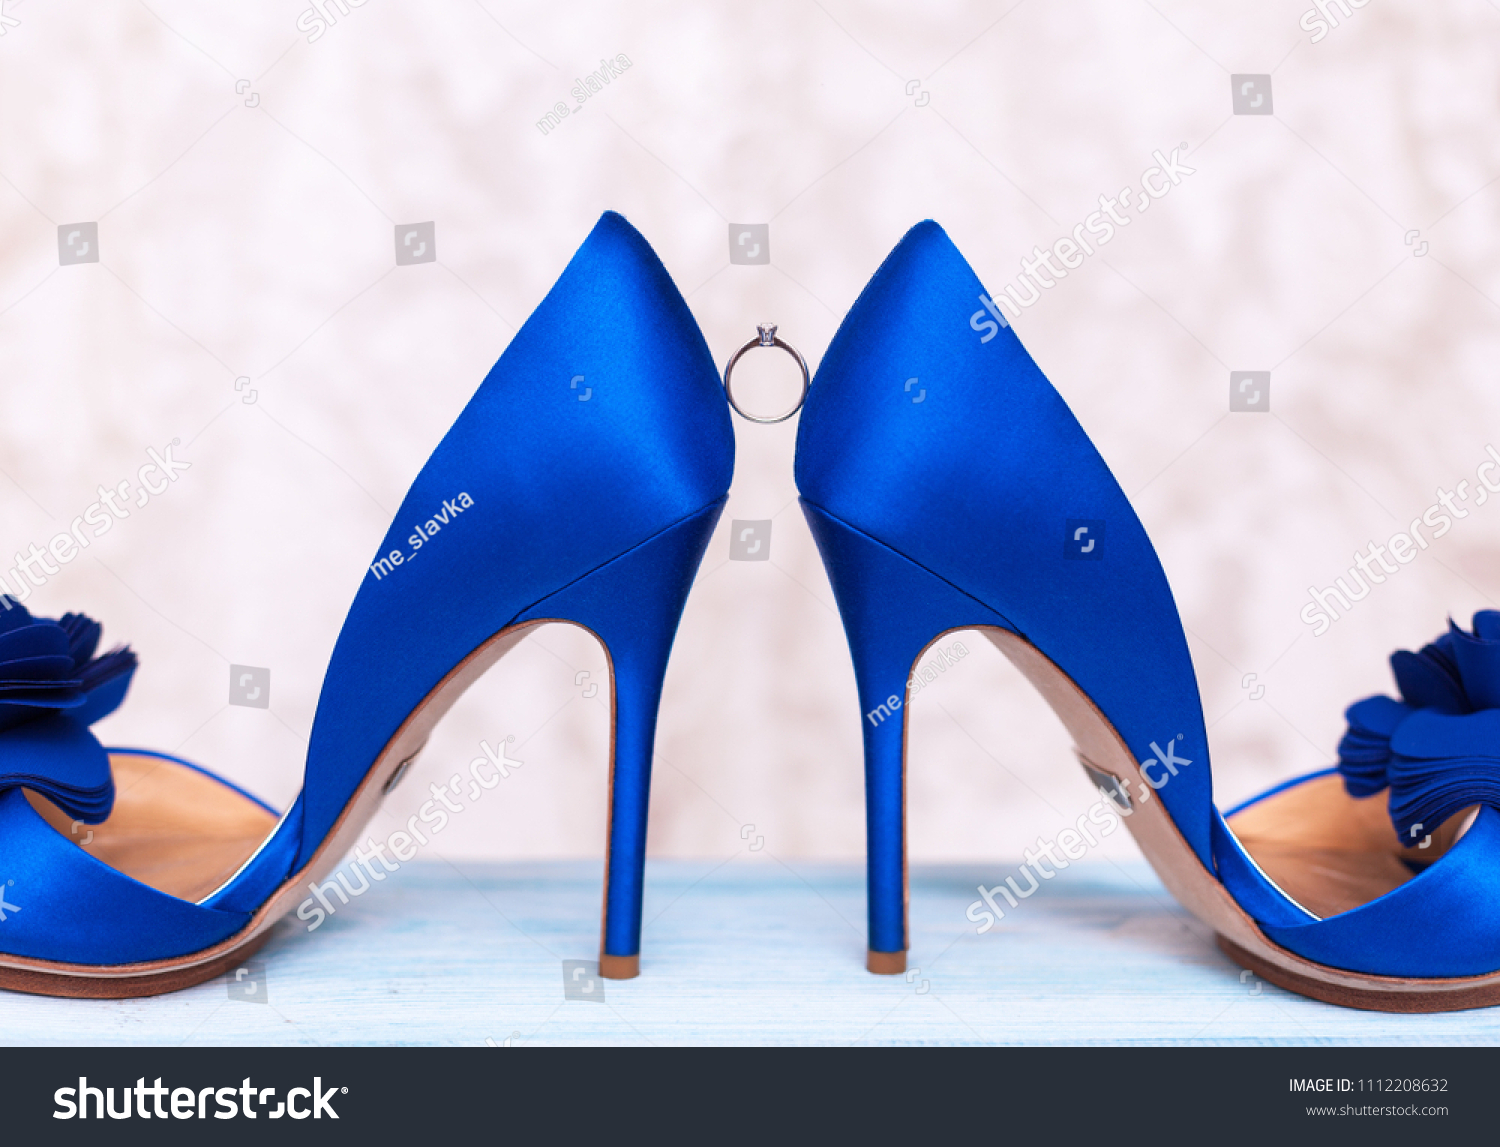 cobalt blue satin shoes